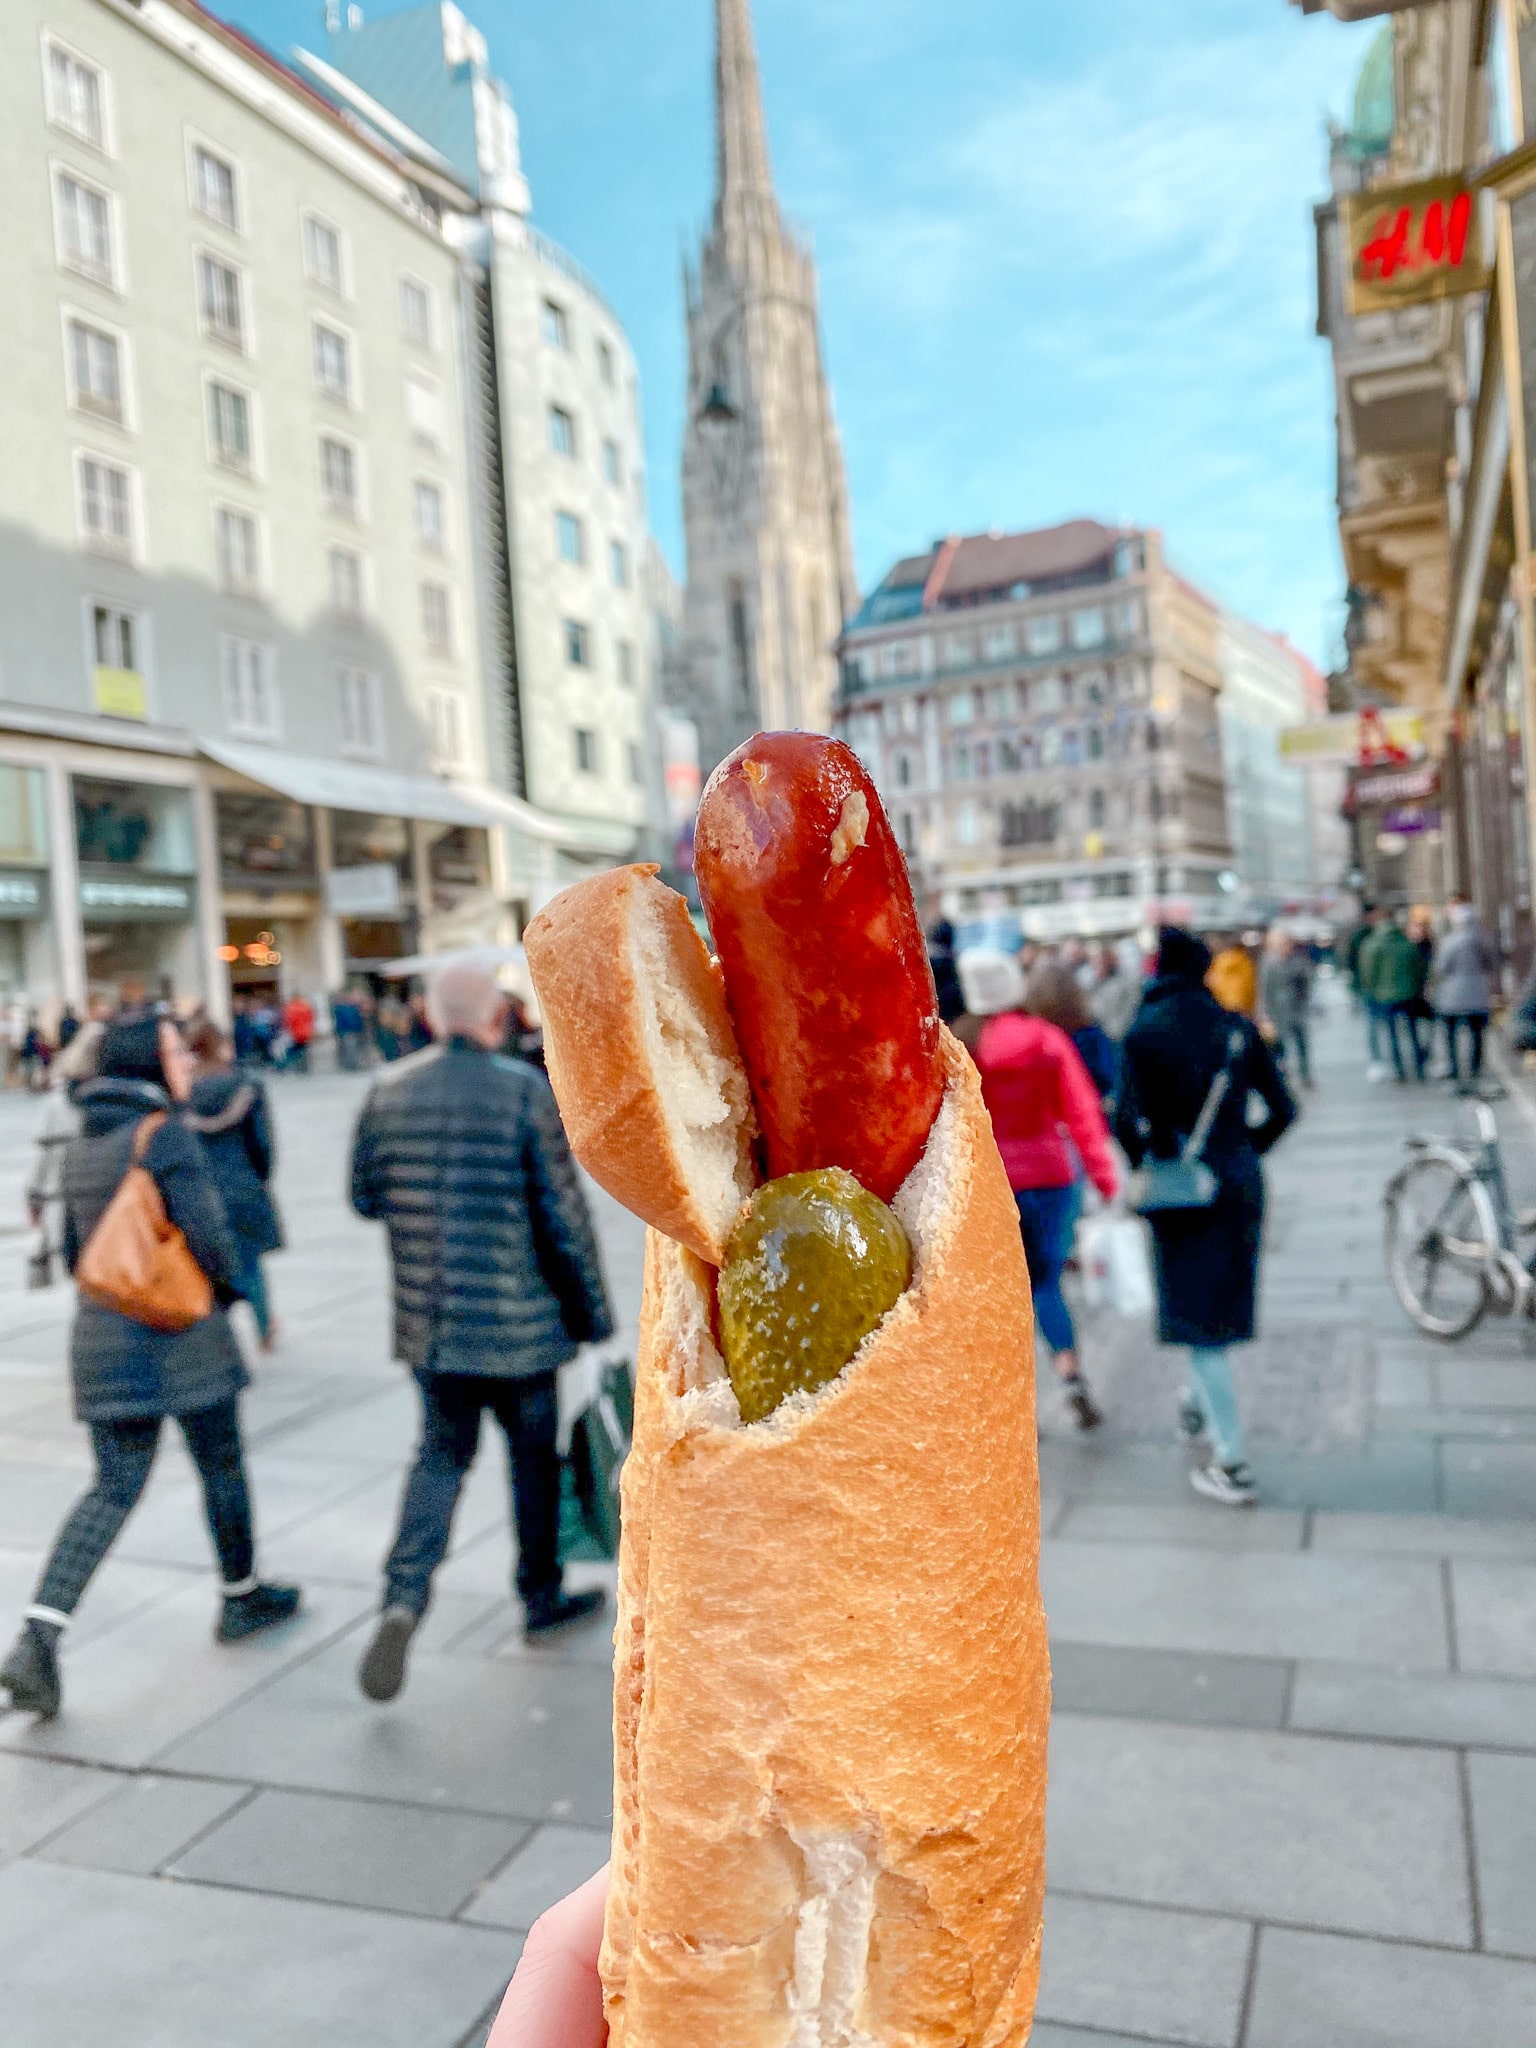 A wiener (sausage/brat) stuffed with sauerkraut, a pickle, ketchup and mustard in Vienna, Austria.